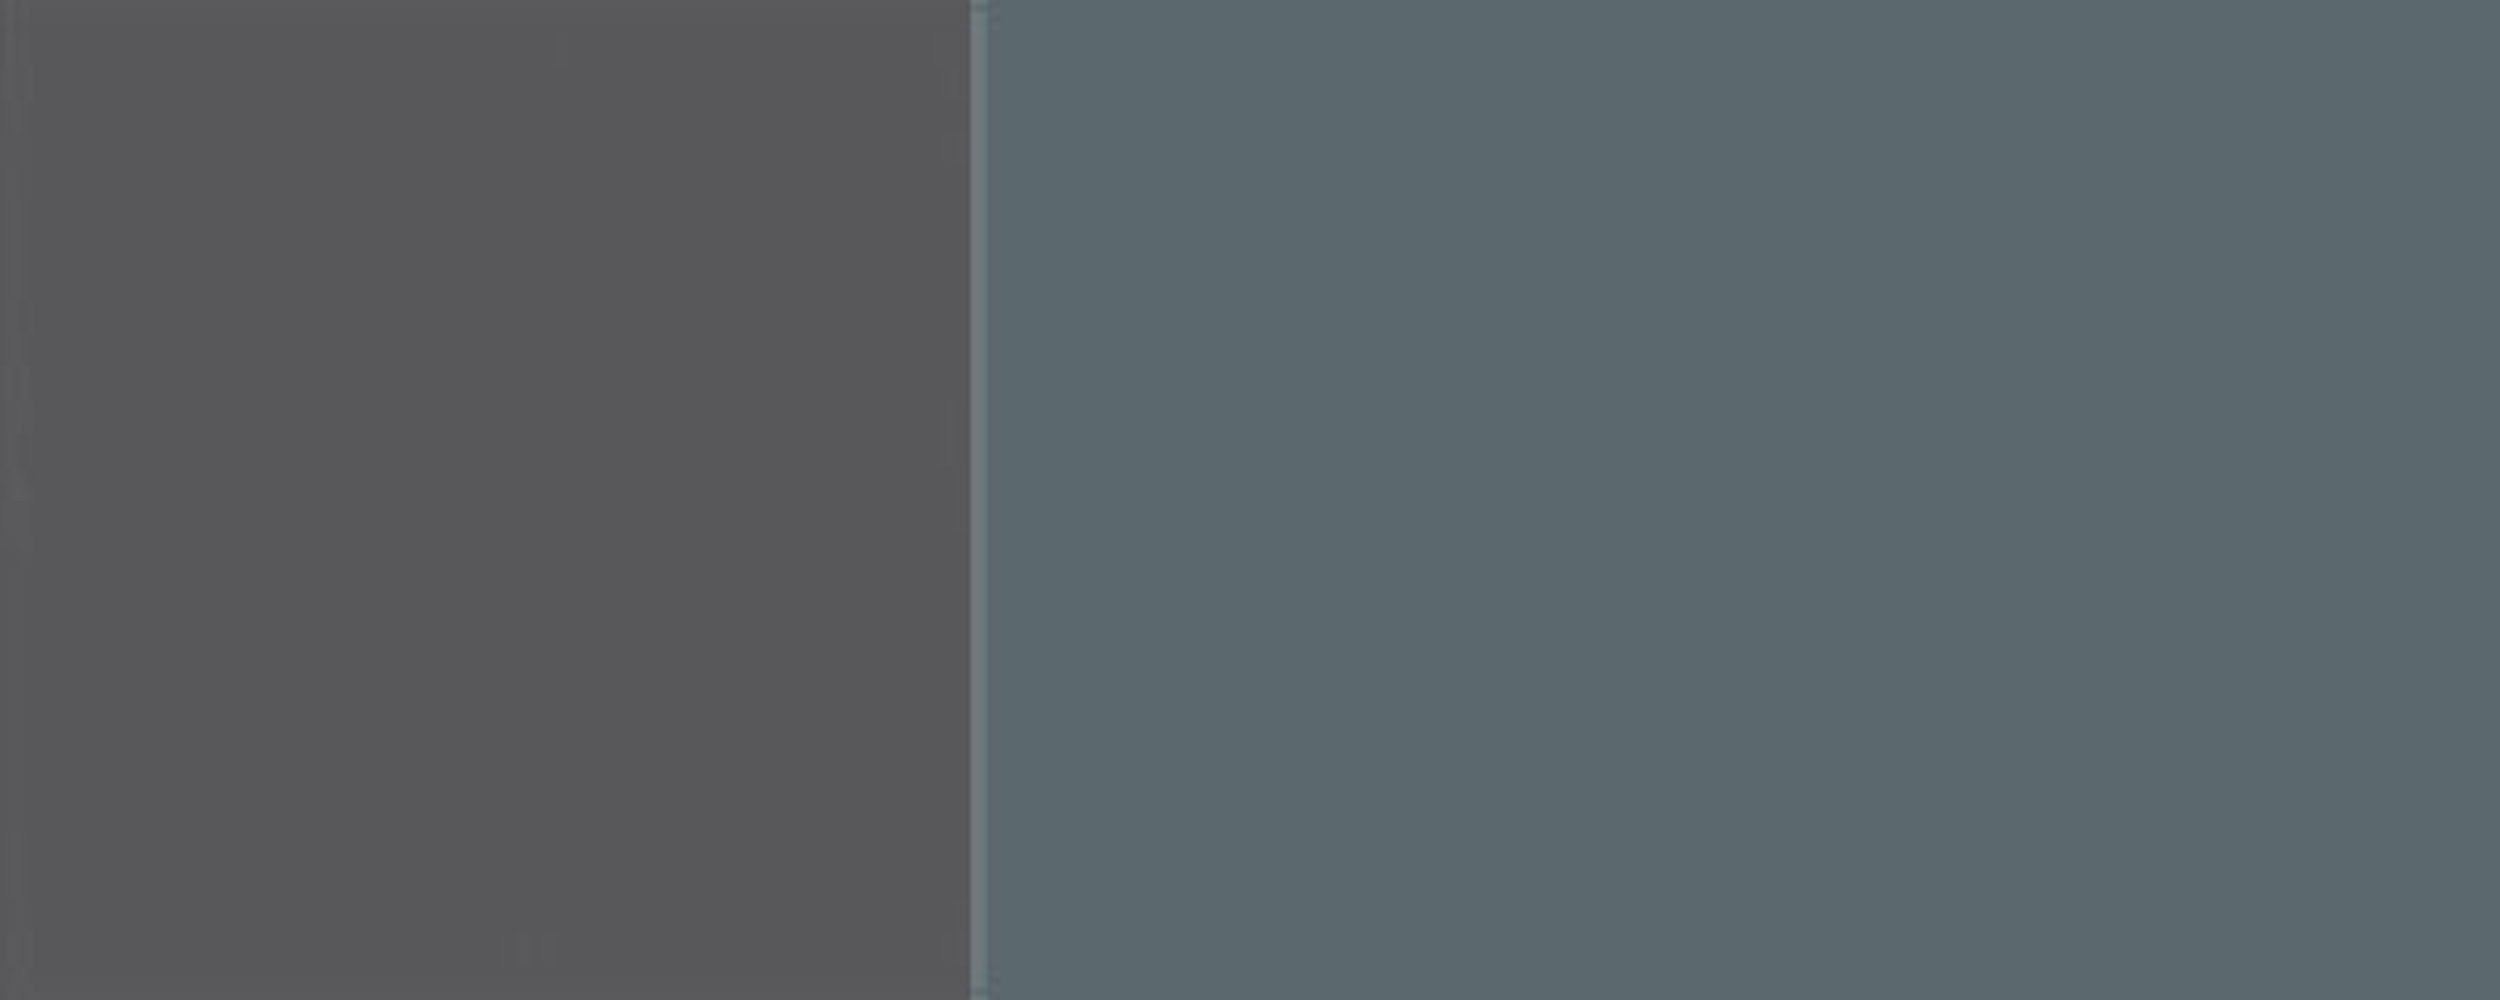 60cm RAL und 7031 (Florence) 2-türig Klapphängeschrank Front- Feldmann-Wohnen Korpusfarbe blaugrau Hochglanz grifflos Florence wählbar